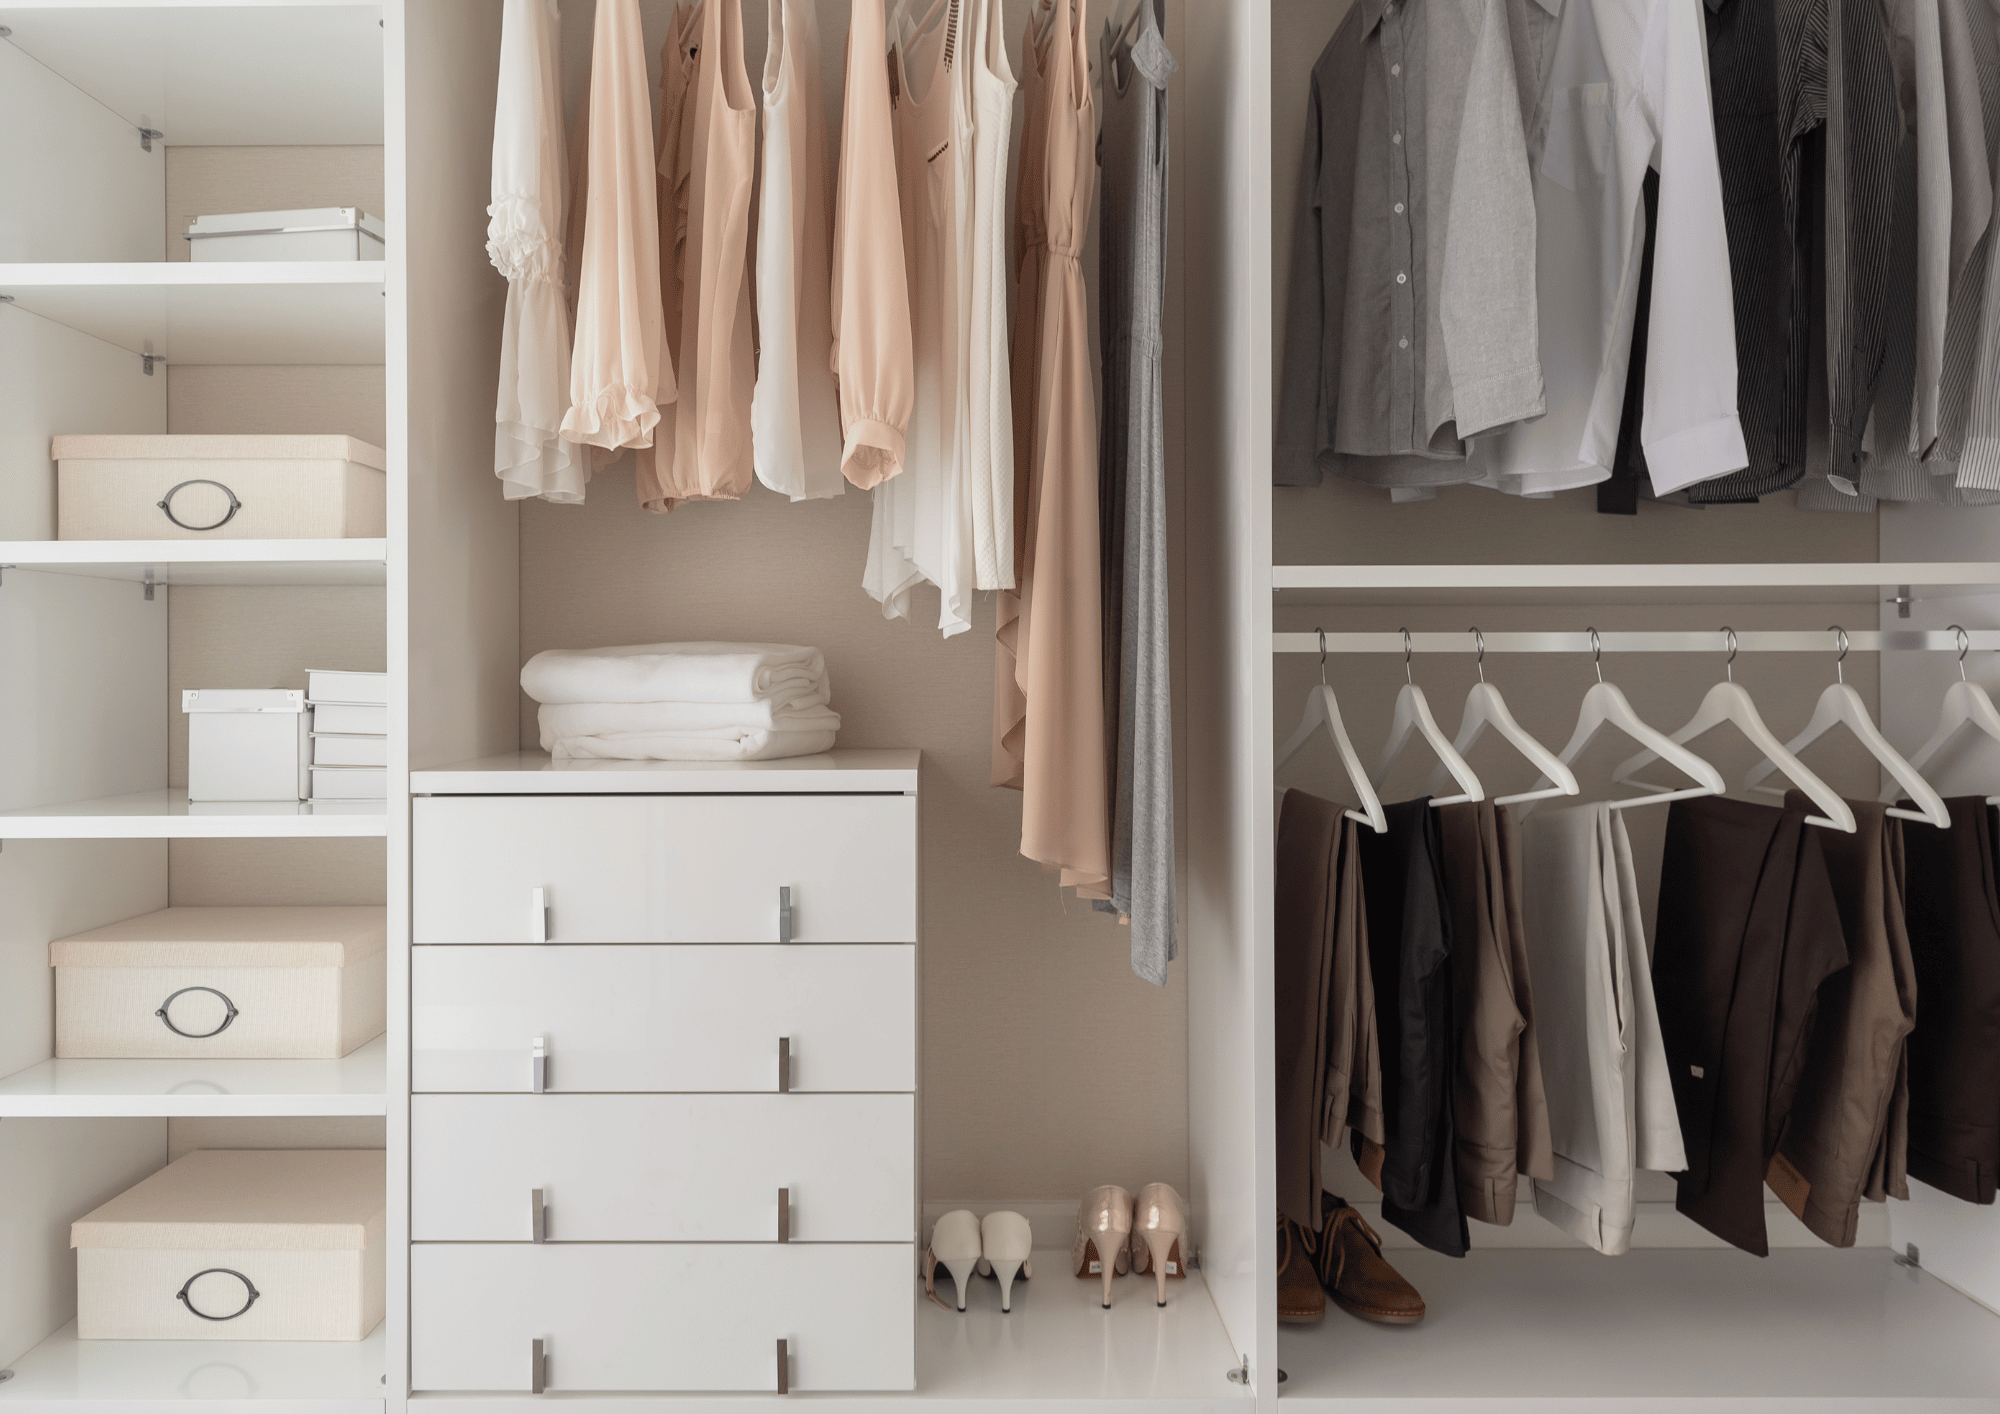 Reach-in closet designs